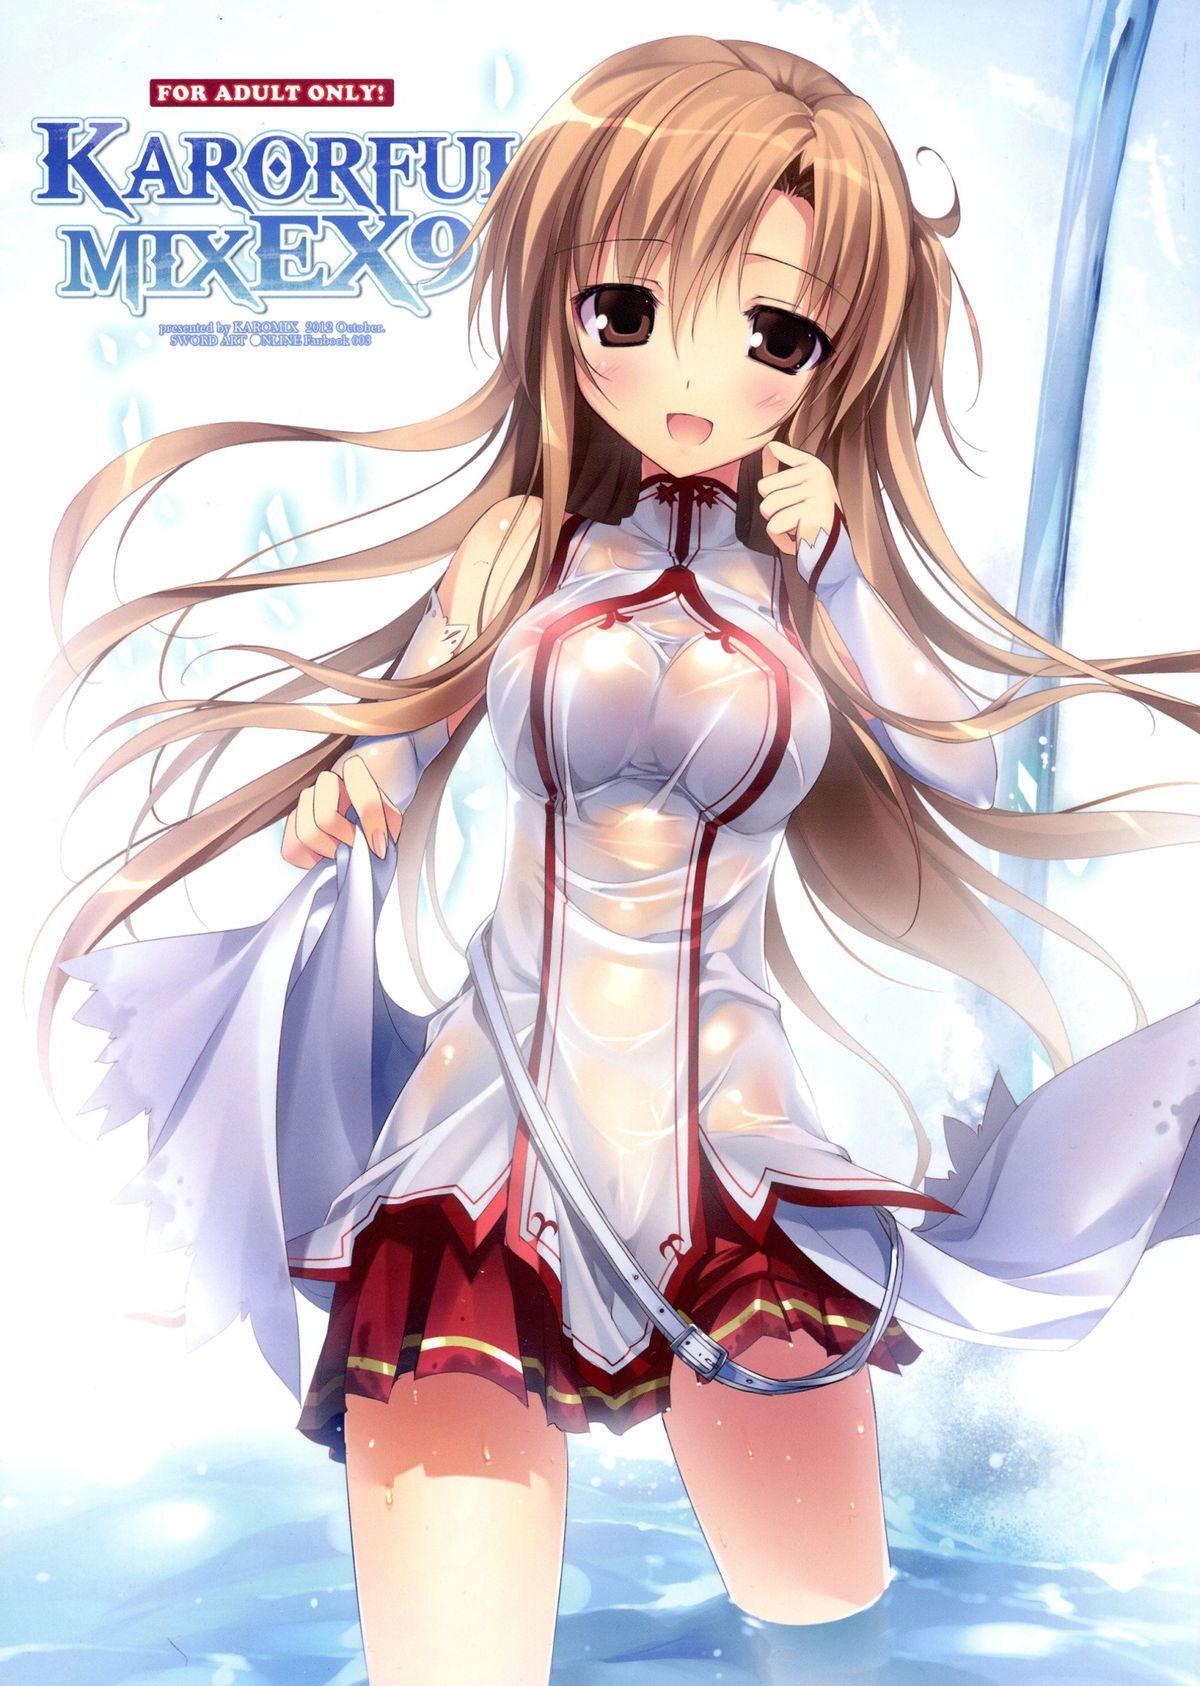 KARORFUL MIX EX9 1